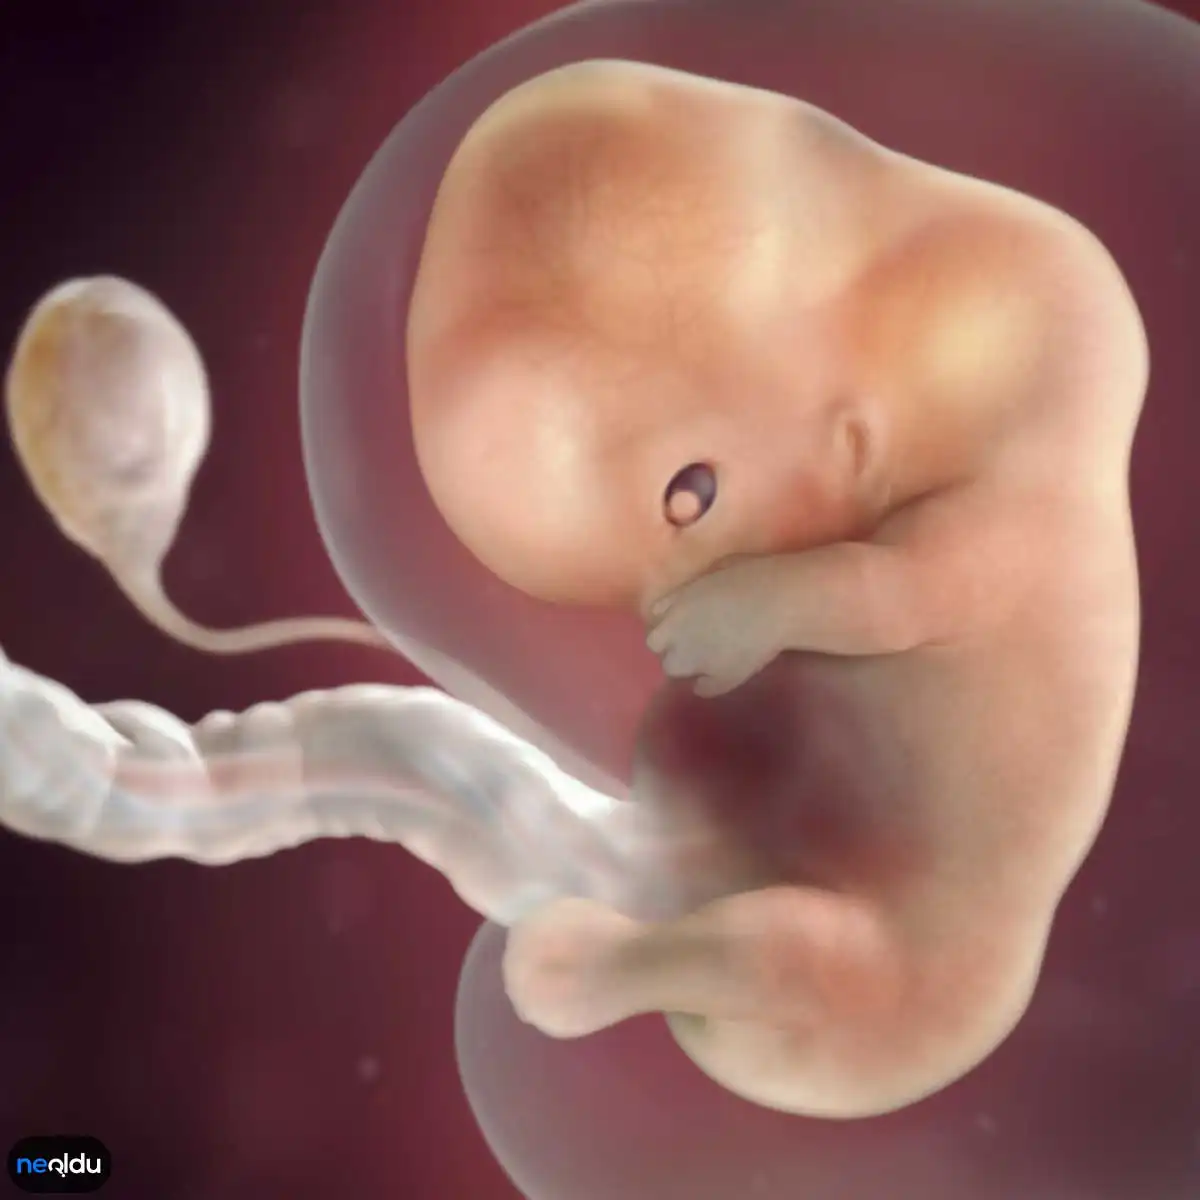 На 9 неделе появляется. Эмбрион на 9-10 неделе беременности. Ребенок на 9-10 неделе беременности. Эмбрион на 9 неделе беременности.